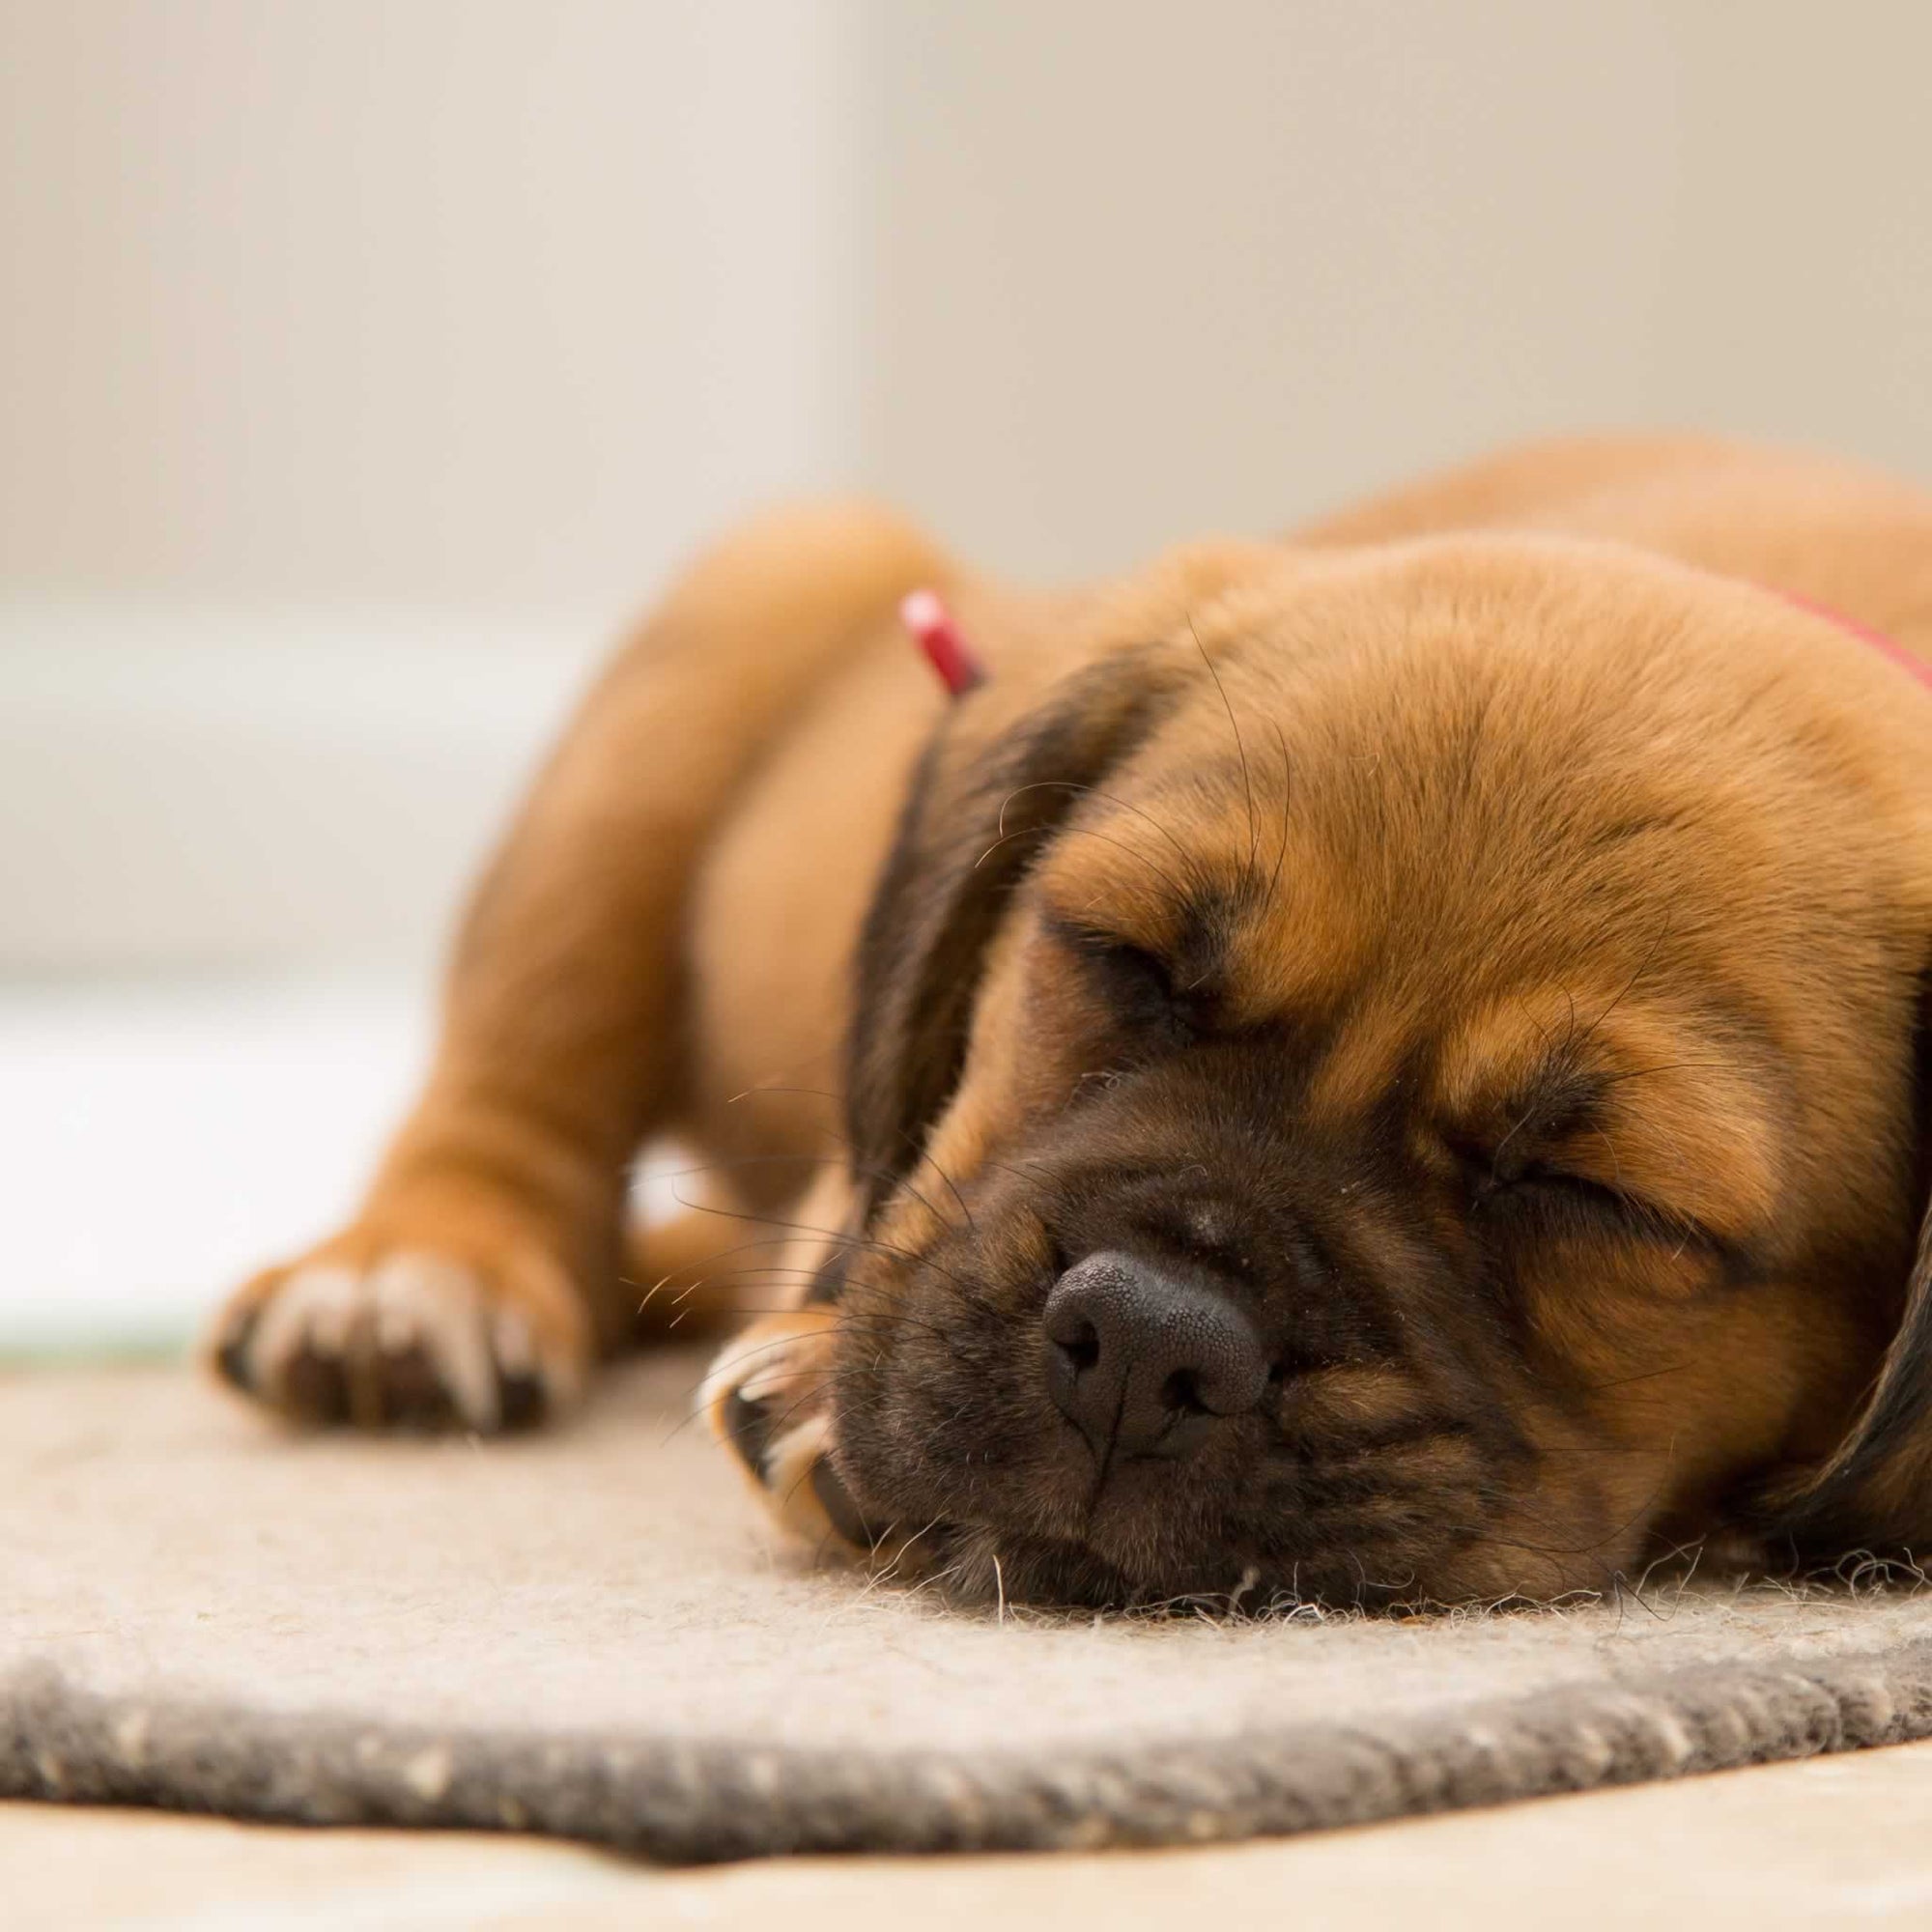 A puppy sleeping on a rug.